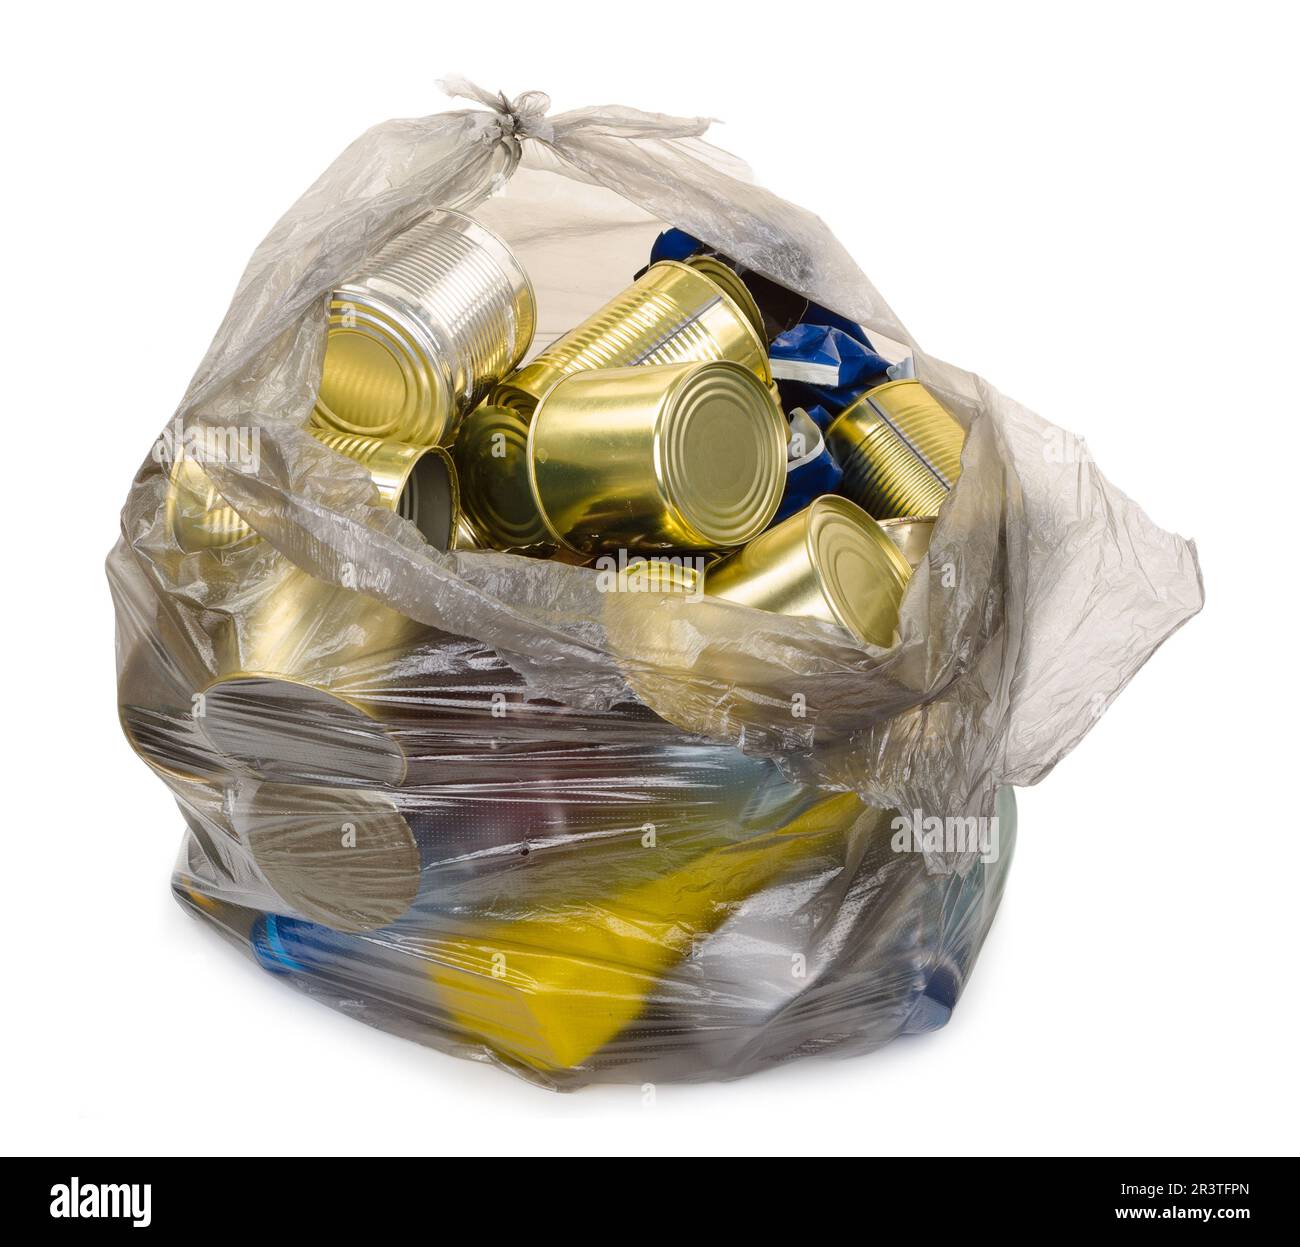 Garbage bag Stock Photo